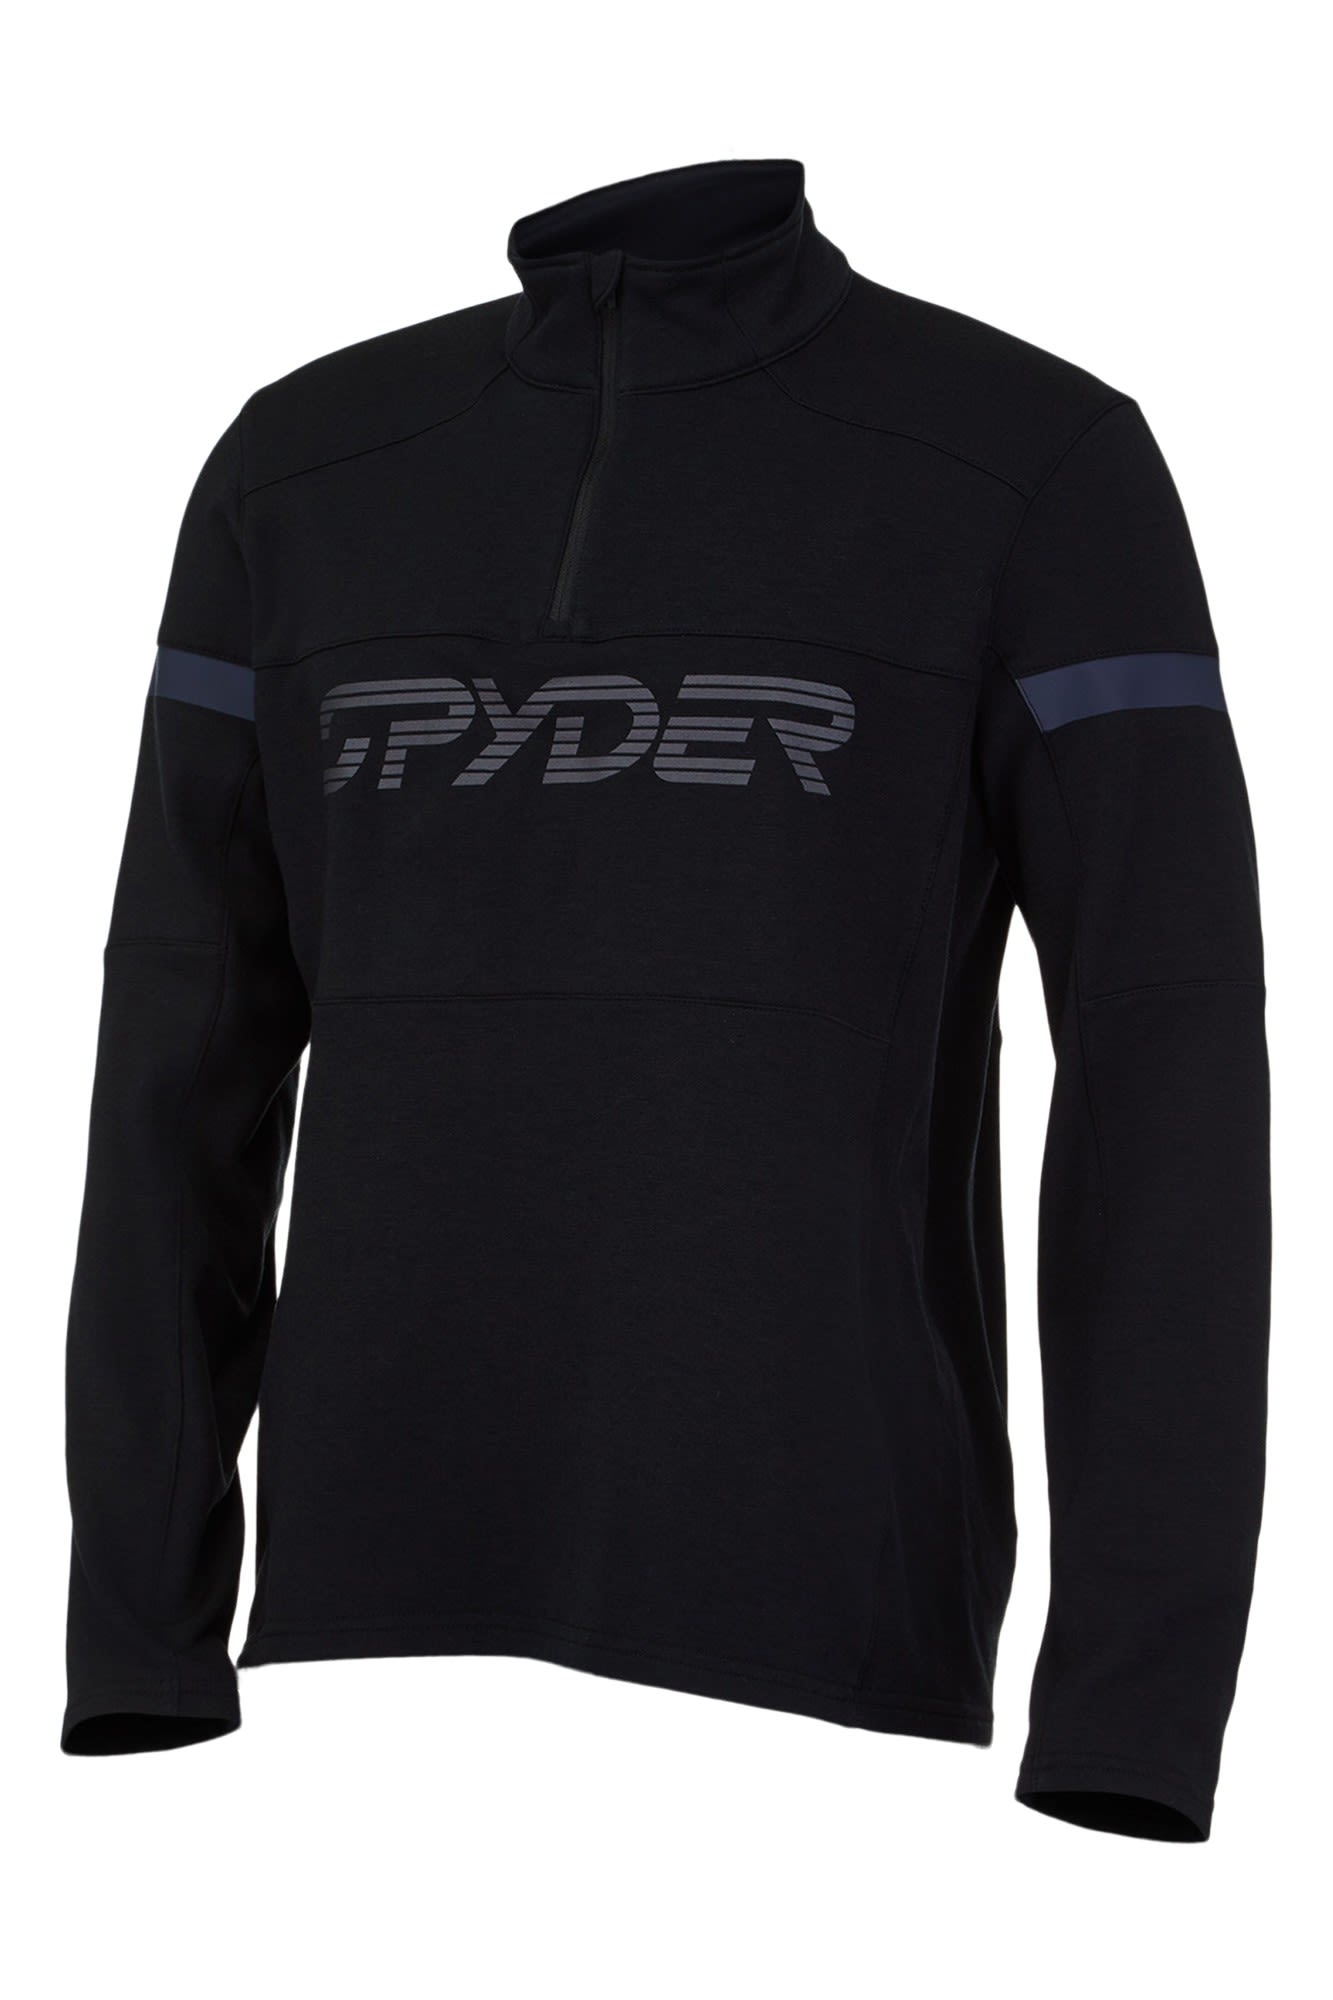 Spyder Speed Half Zip Jacket Schwarz- Male Freizeitjacken- Grsse S - Farbe Black